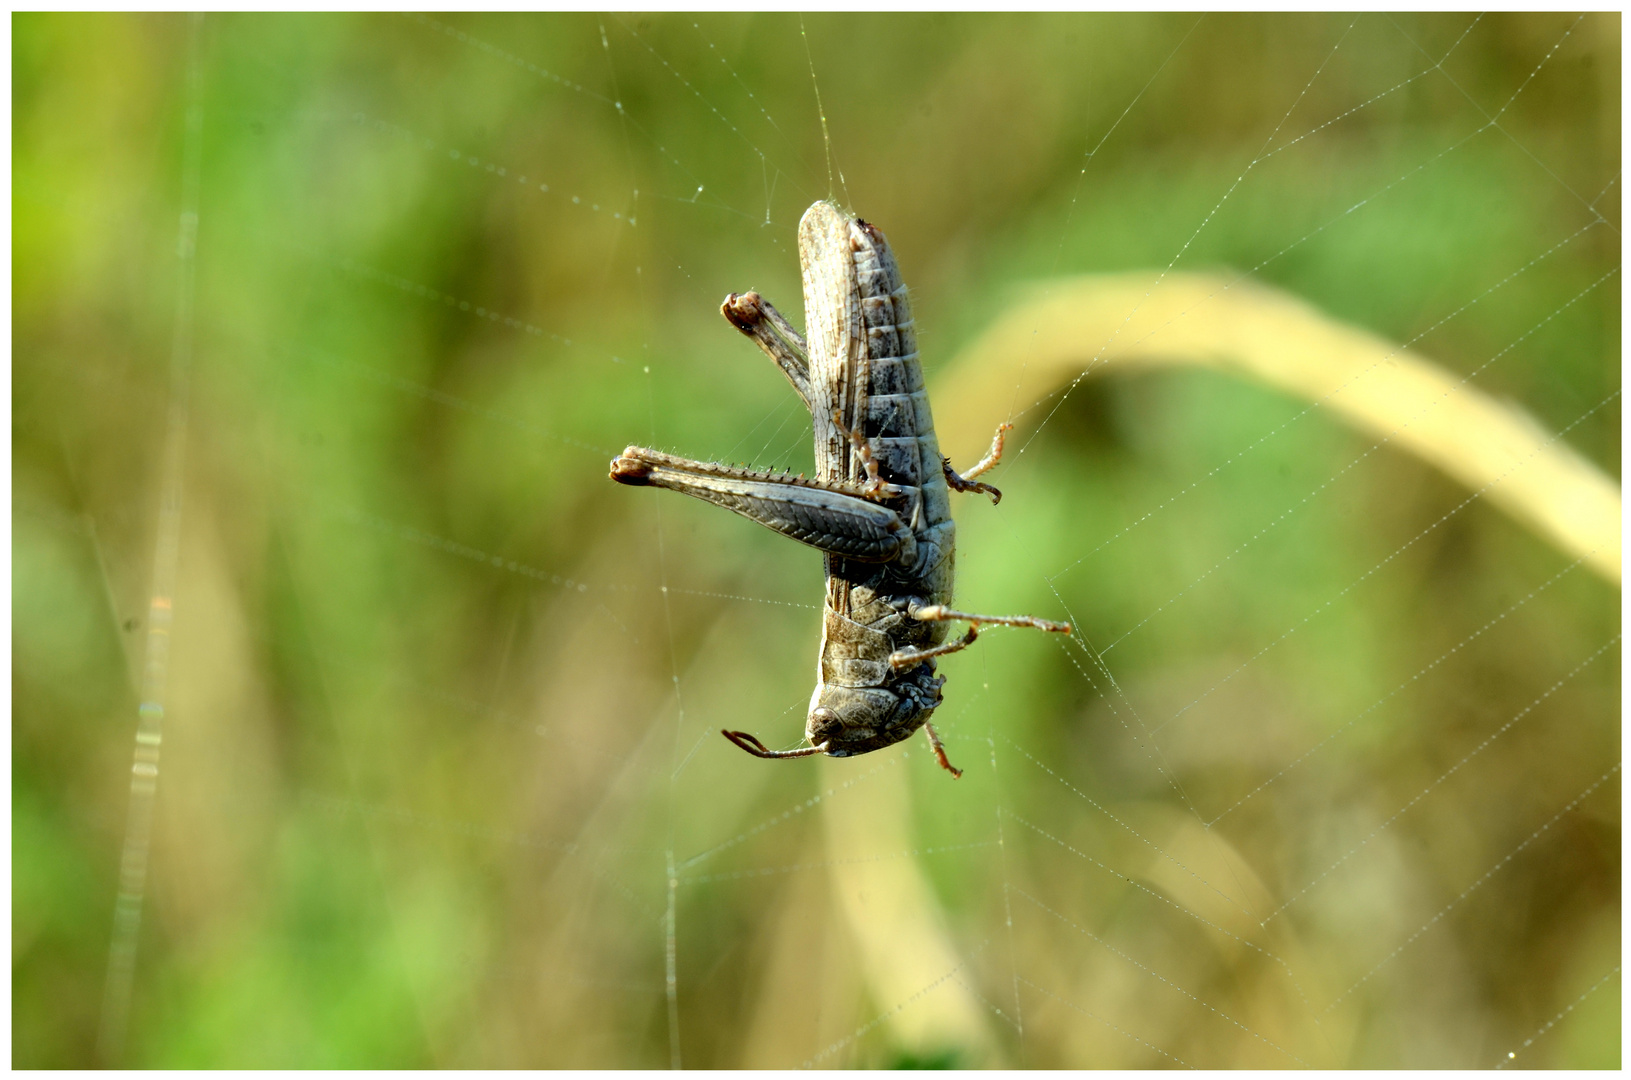 dieser Grashüpfer hatte Pech, jetzt hängt er im Spinnennetz